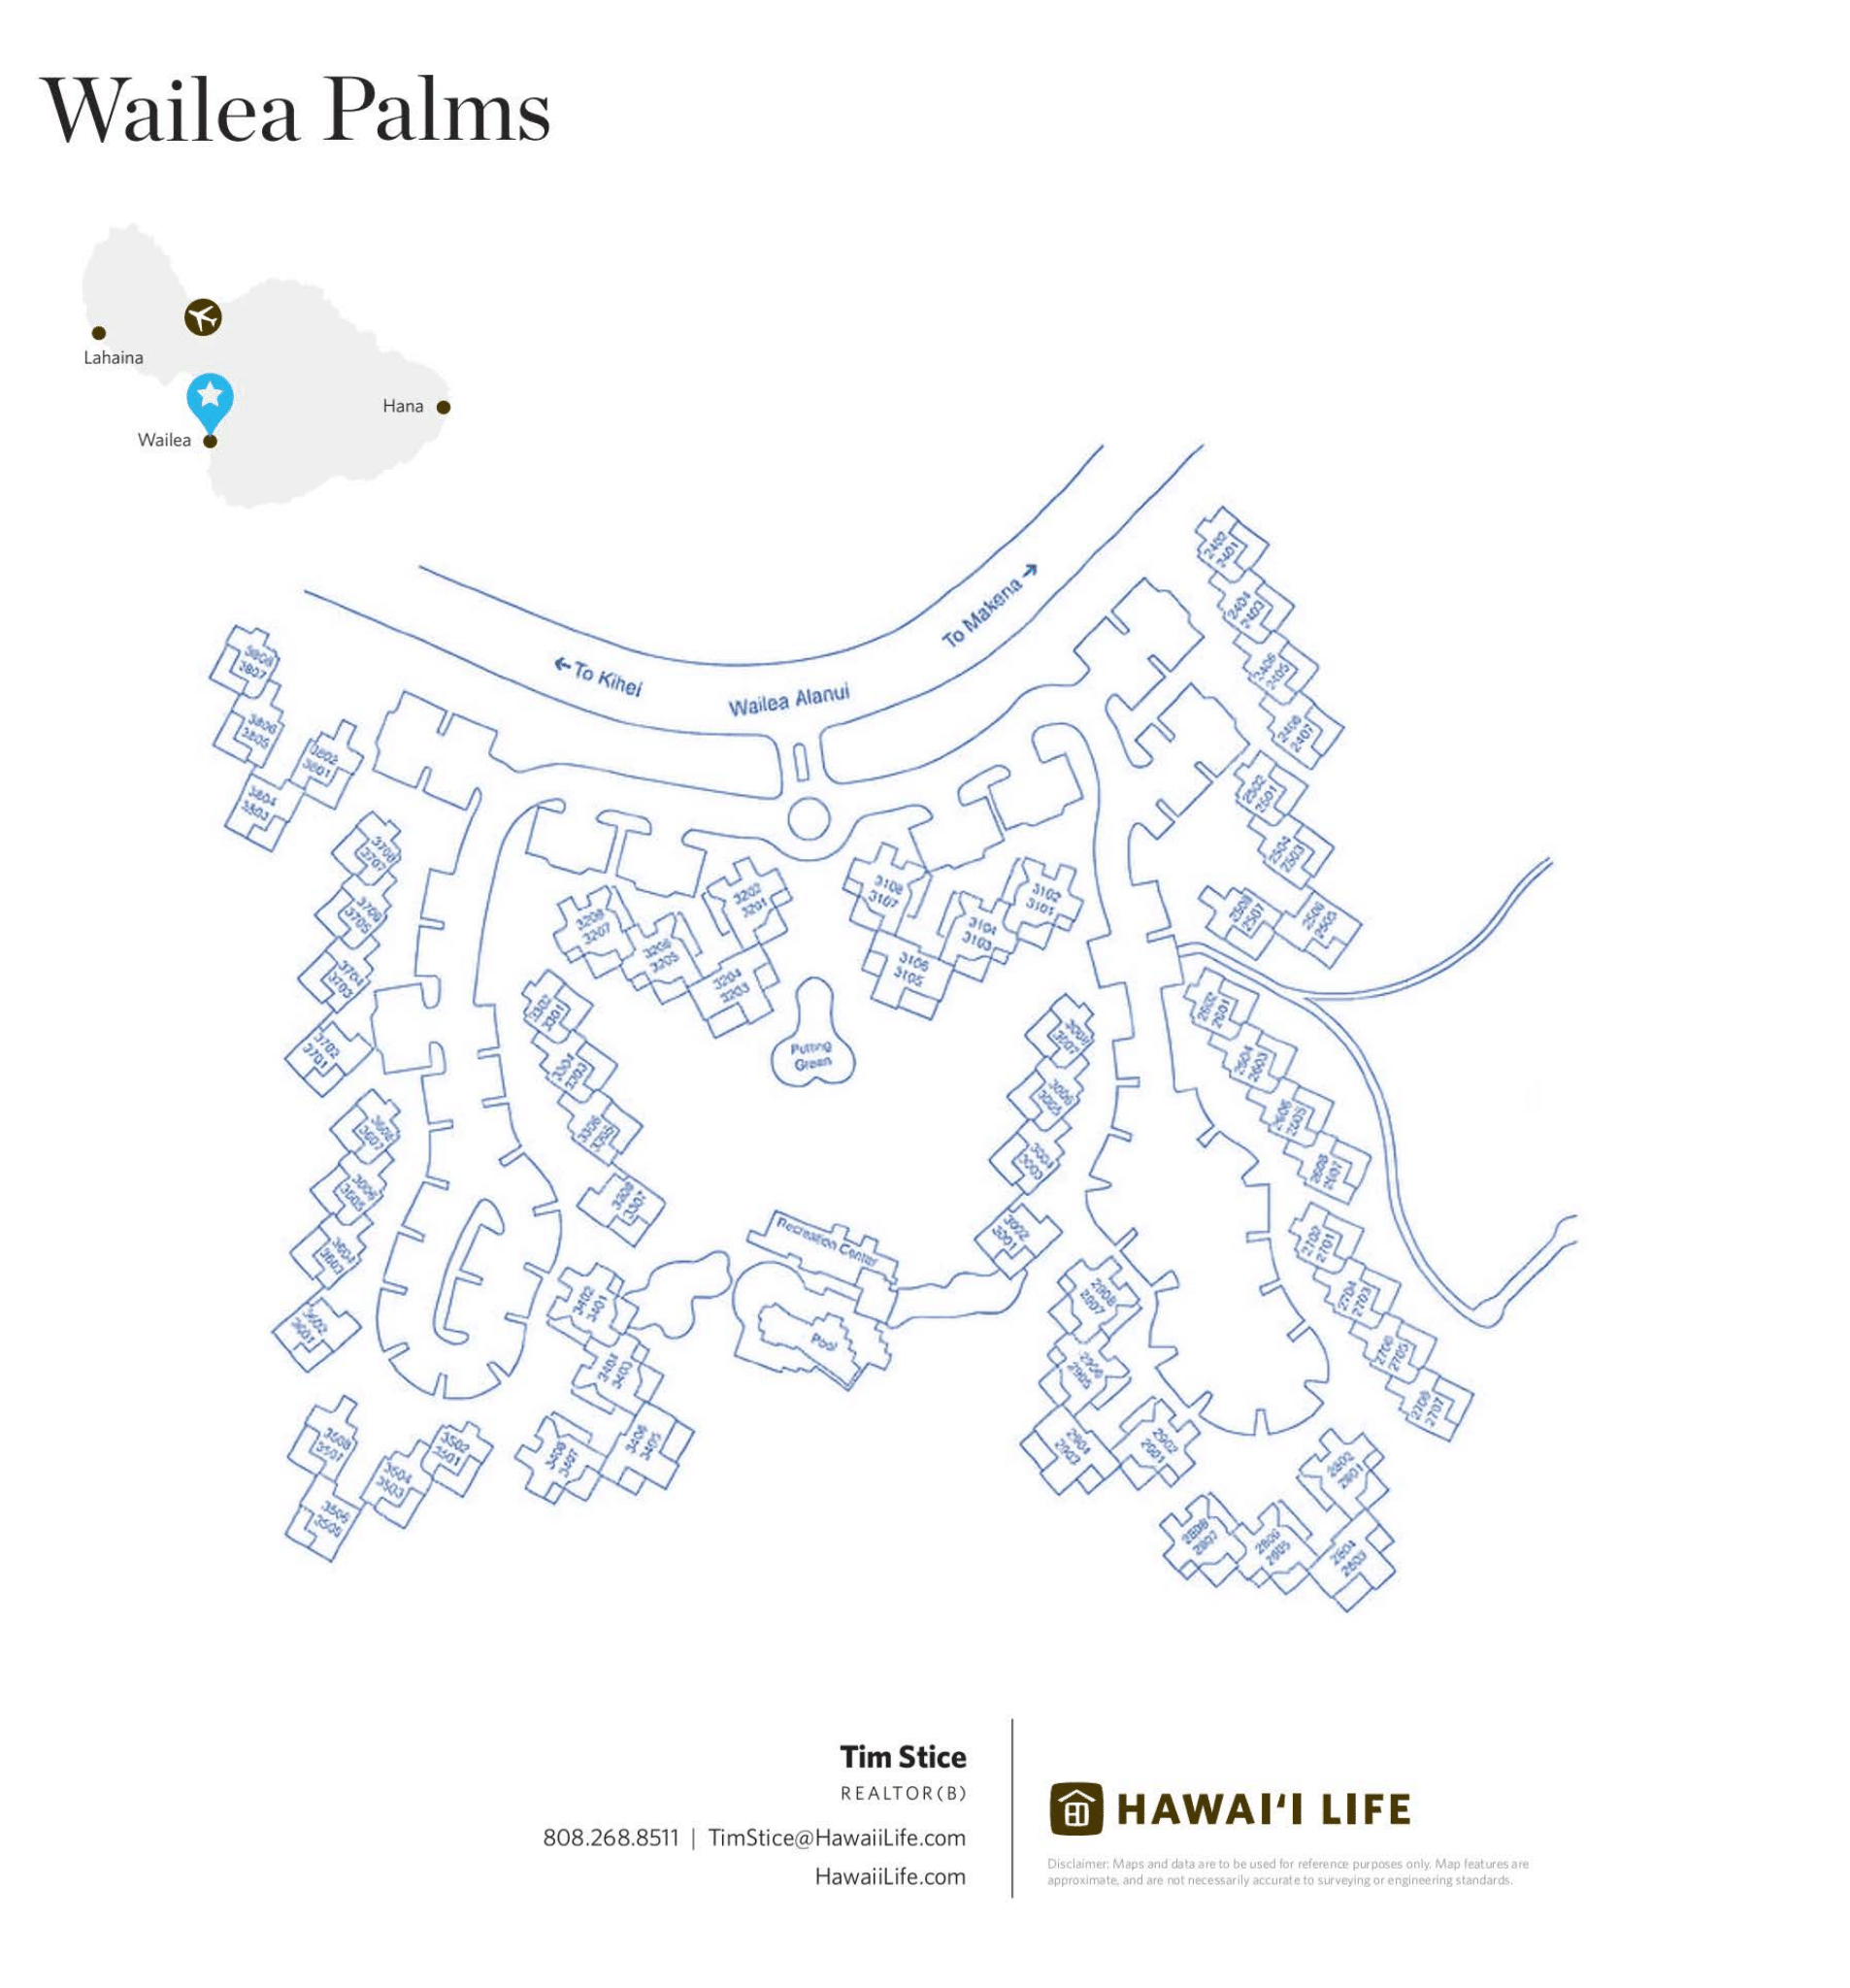 Wailea Palms